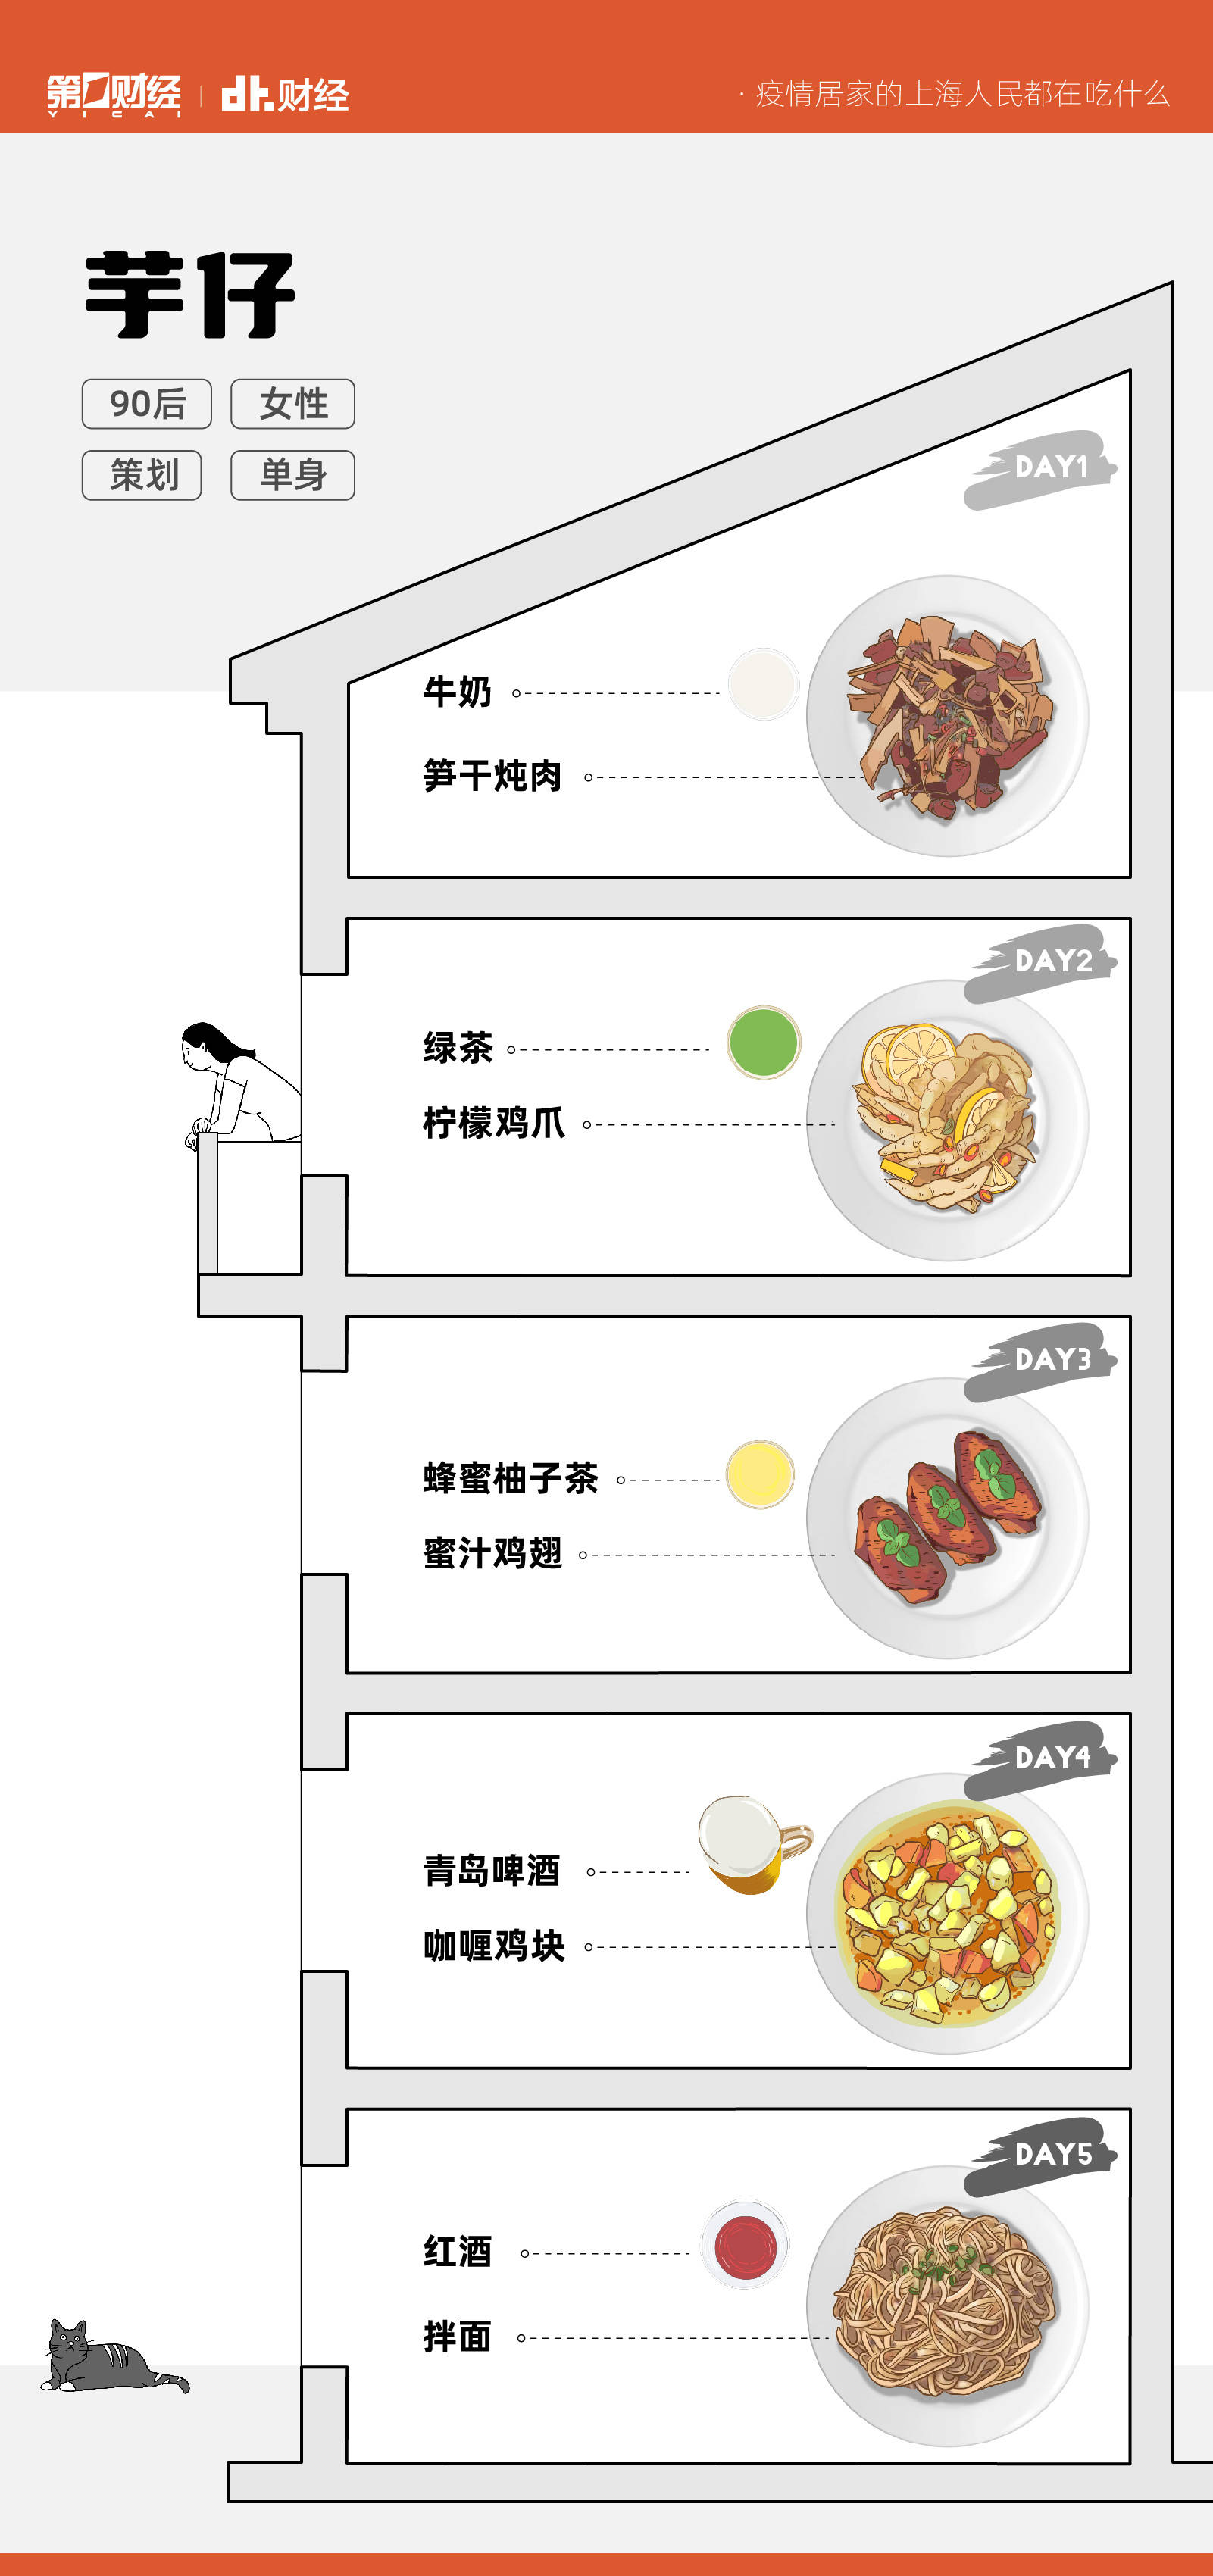 激情抢菜的上海年轻人，隔离期间都在吃什么？